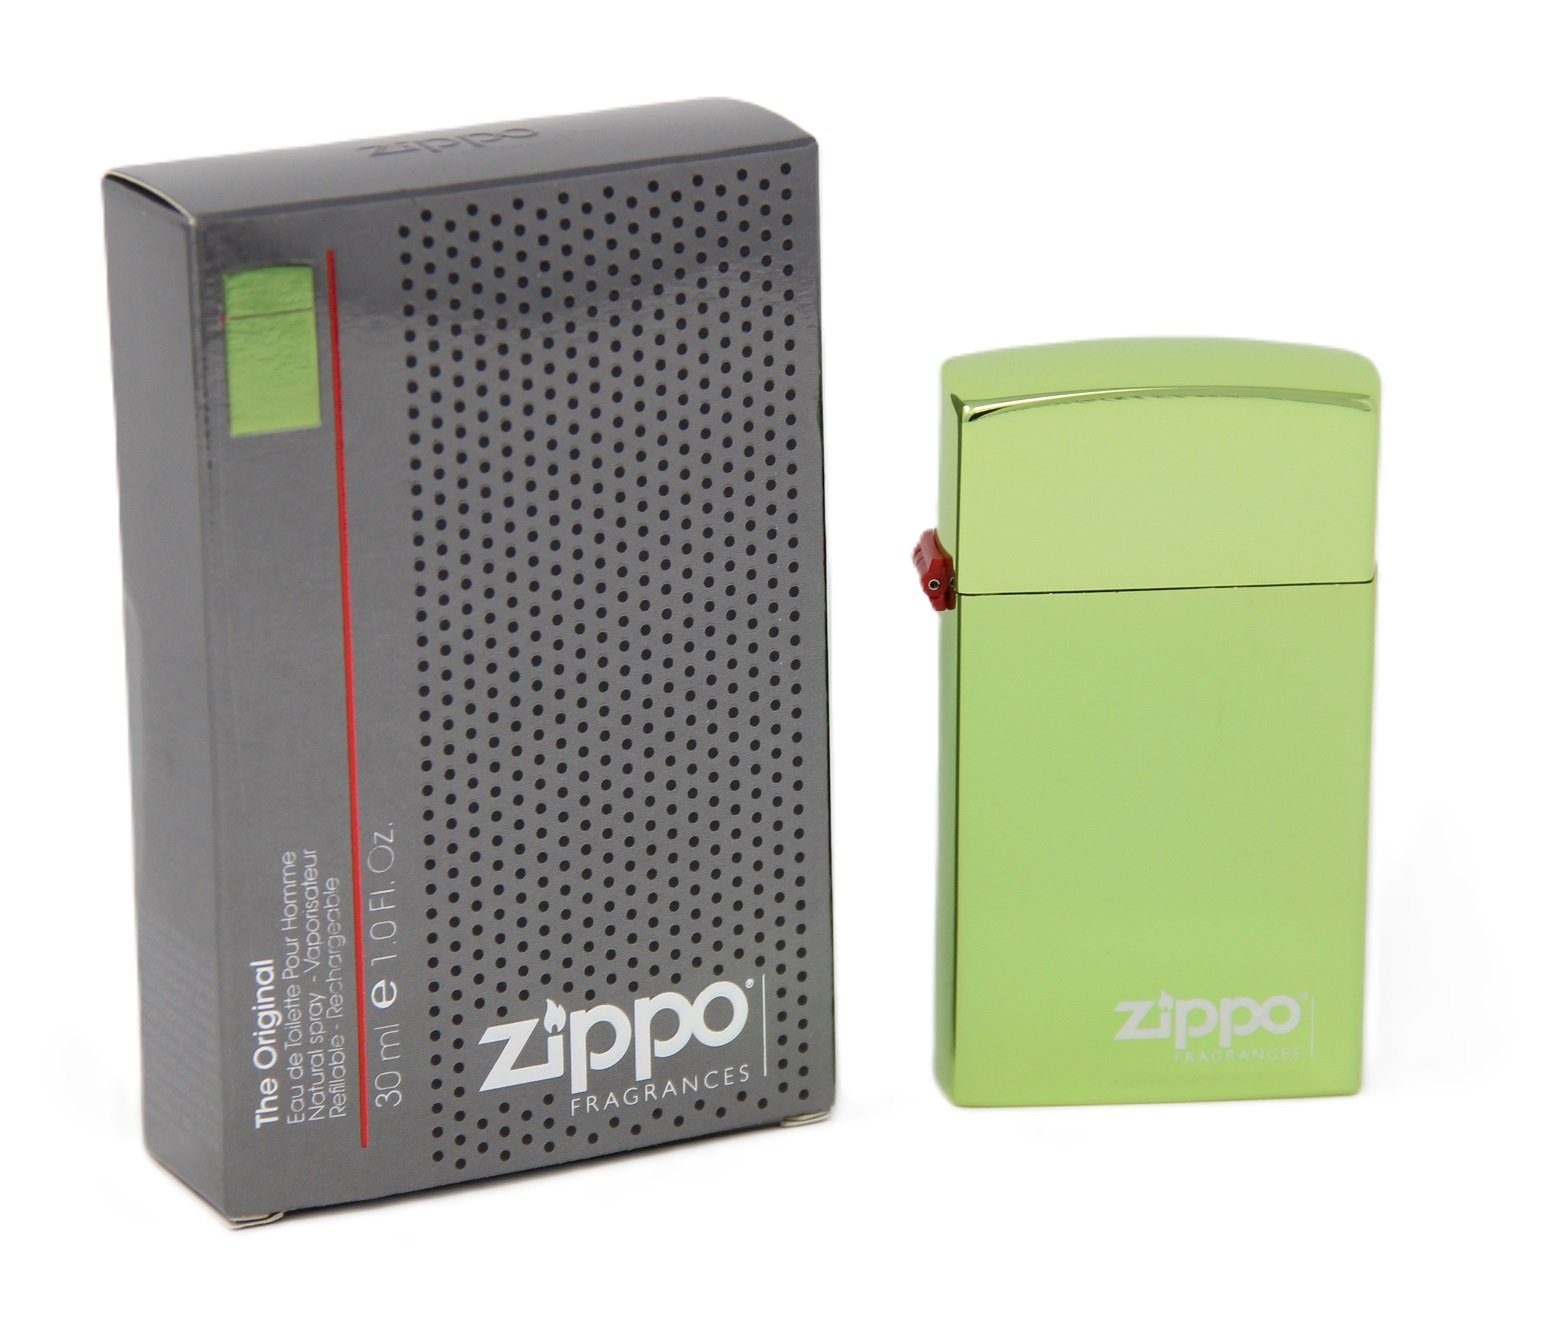 Zippo Eau de Toilette Zippo The Original Pour Homme Eau De Toilette Spray 30ml